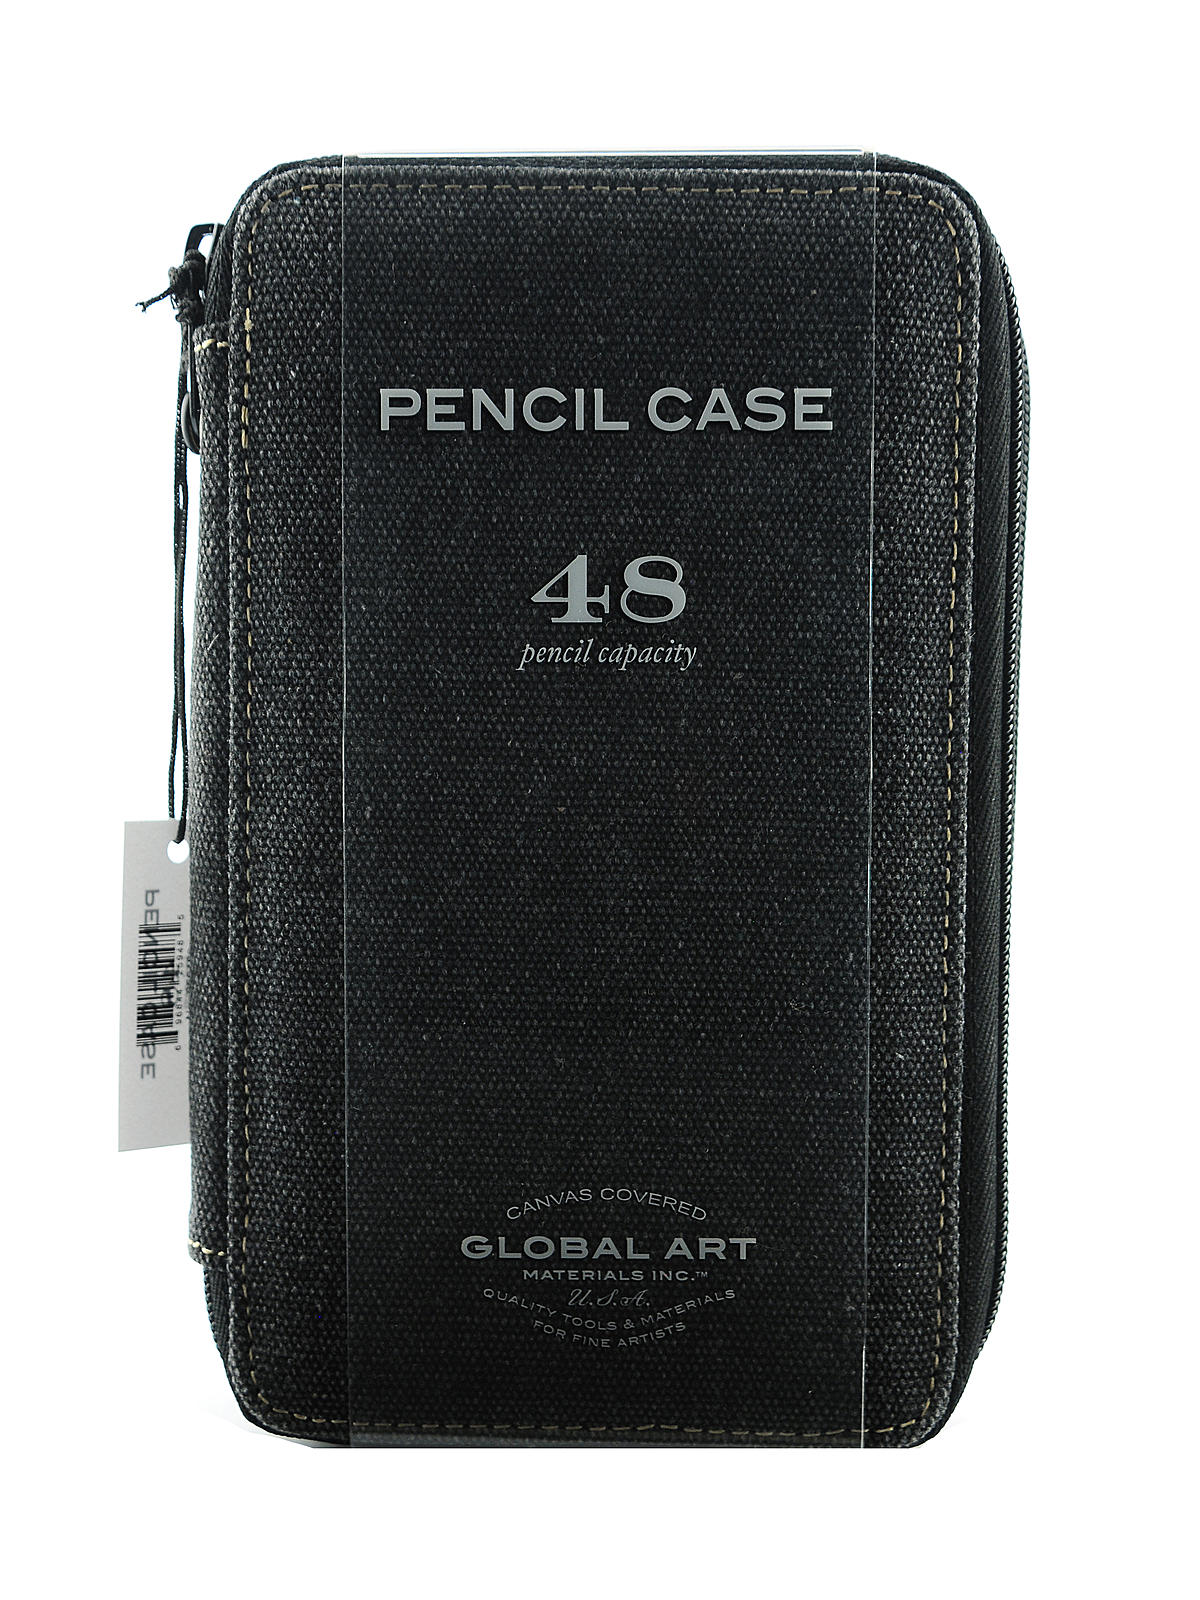 Canvas Pencil Cases Black Holds 48 Pencils